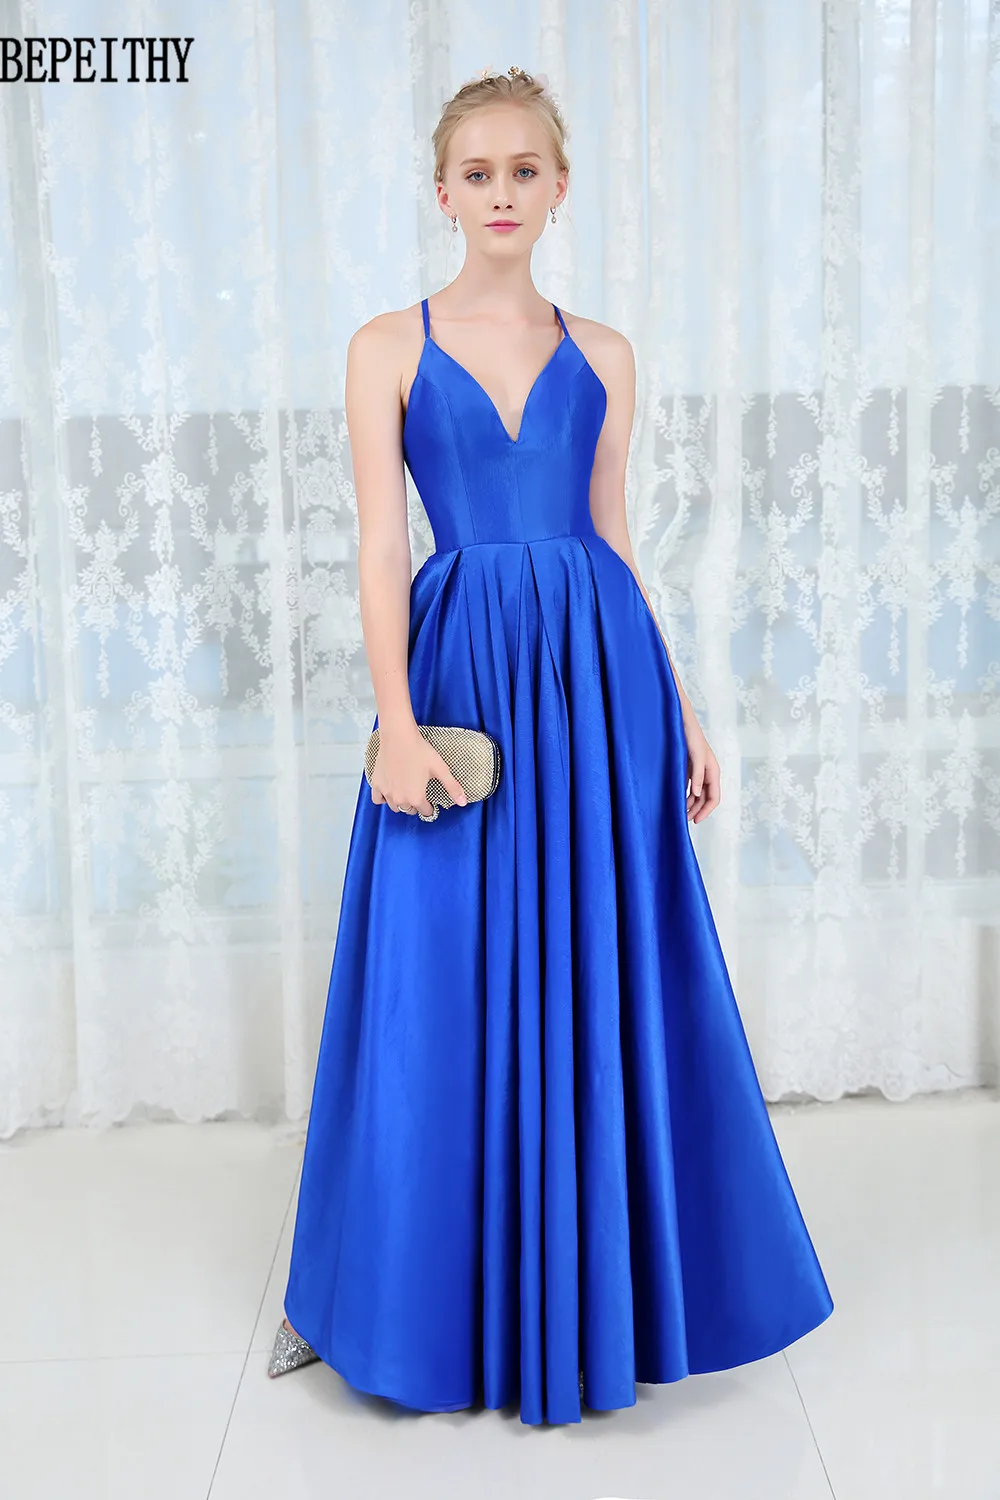 BEPEITHY vestido de festa новые сексуальные платья с глубоким v-образным вырезом для выпускного вечера простое синее платье Длинные вечерние платья